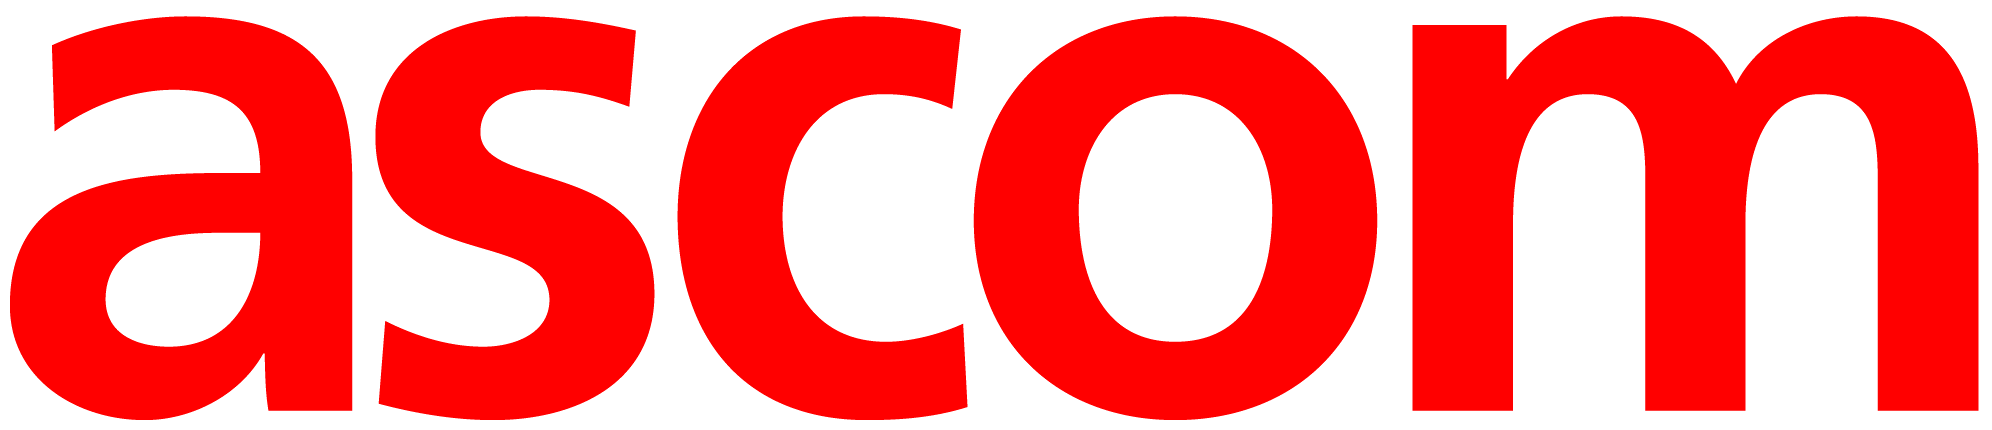 ascom-logo-red